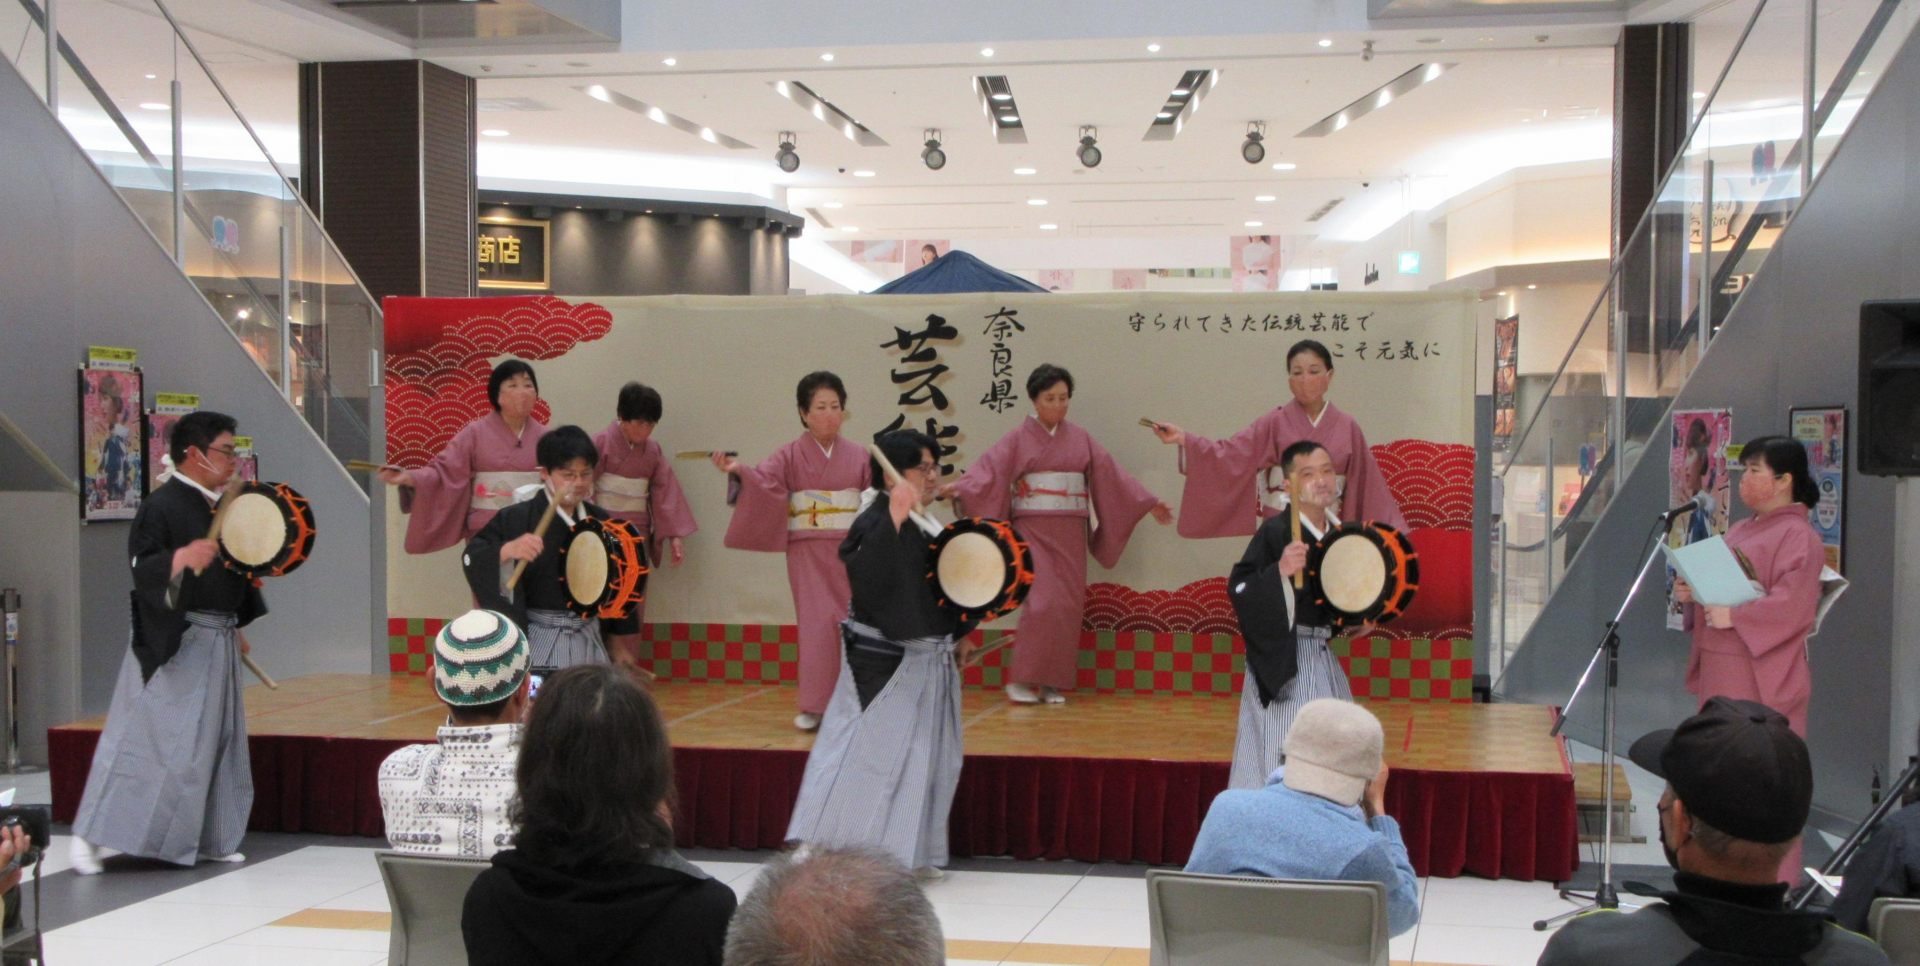 筱原舞不仅发展成为一种神道教仪式，而且发展成为一种娱乐人们的表演。